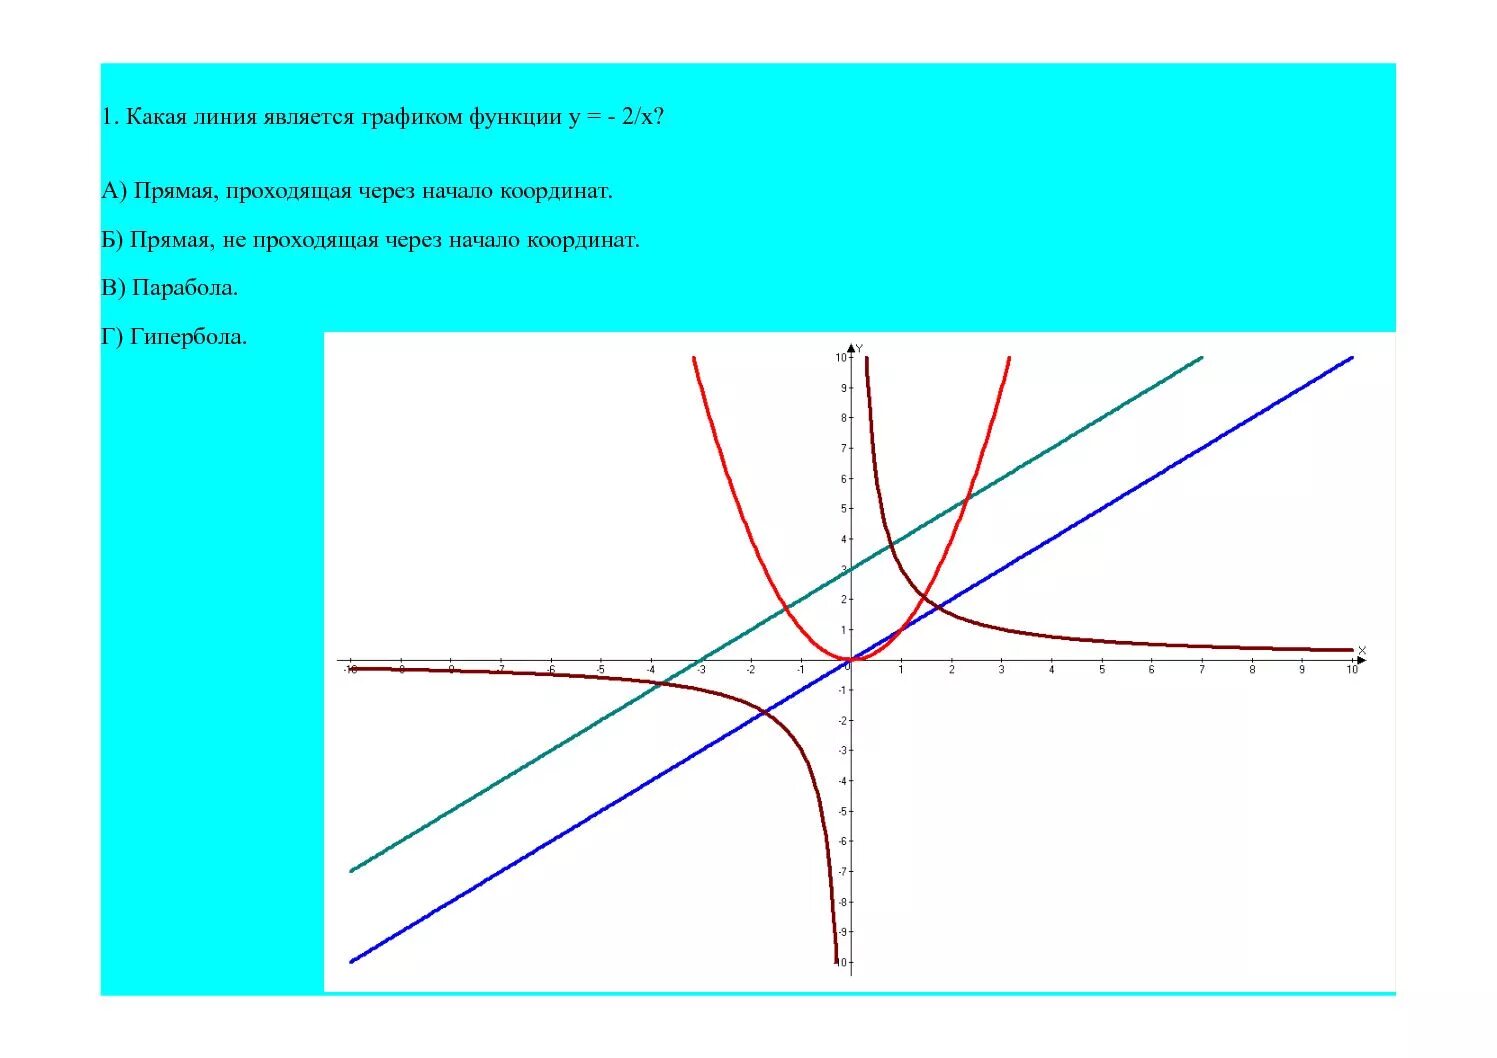 Начало координат график. График функции 2/x Гипербола. Y=2/Х график функции Гипербола. Какая линия является графиком функции. Прямая не проходящая через начало координат является графиком.